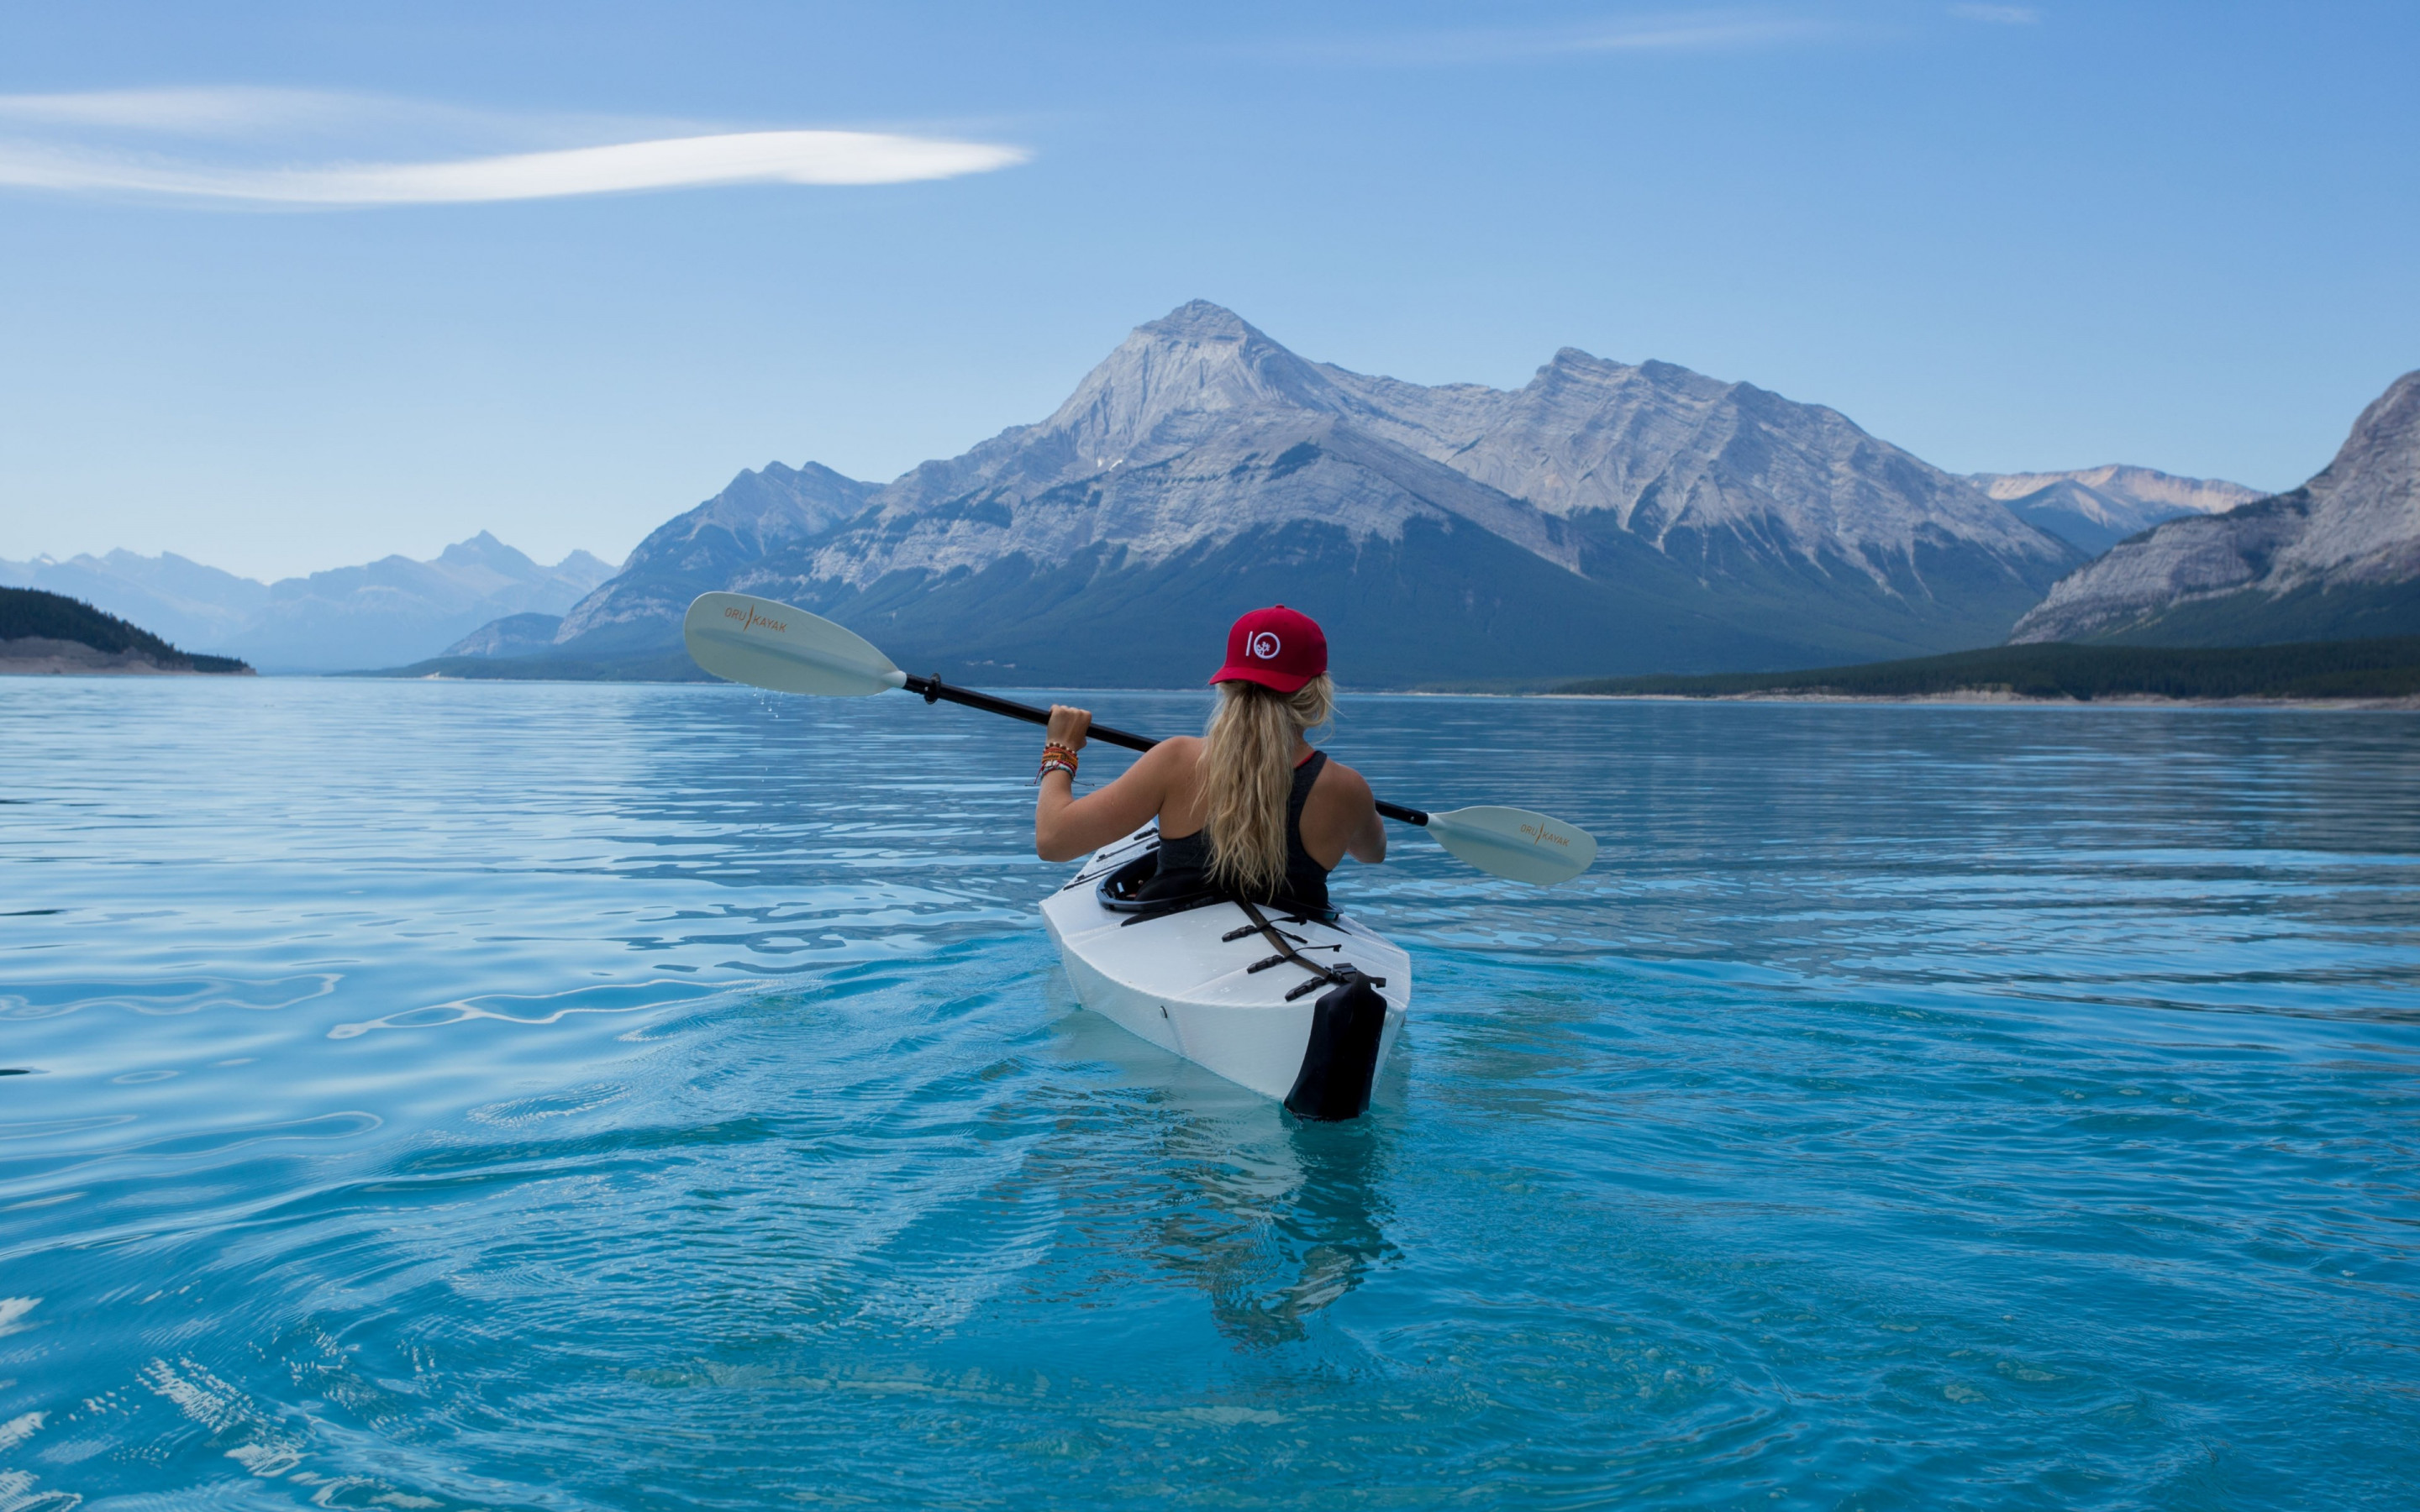 Trip with kayak on lake wallpaper 2880x1800